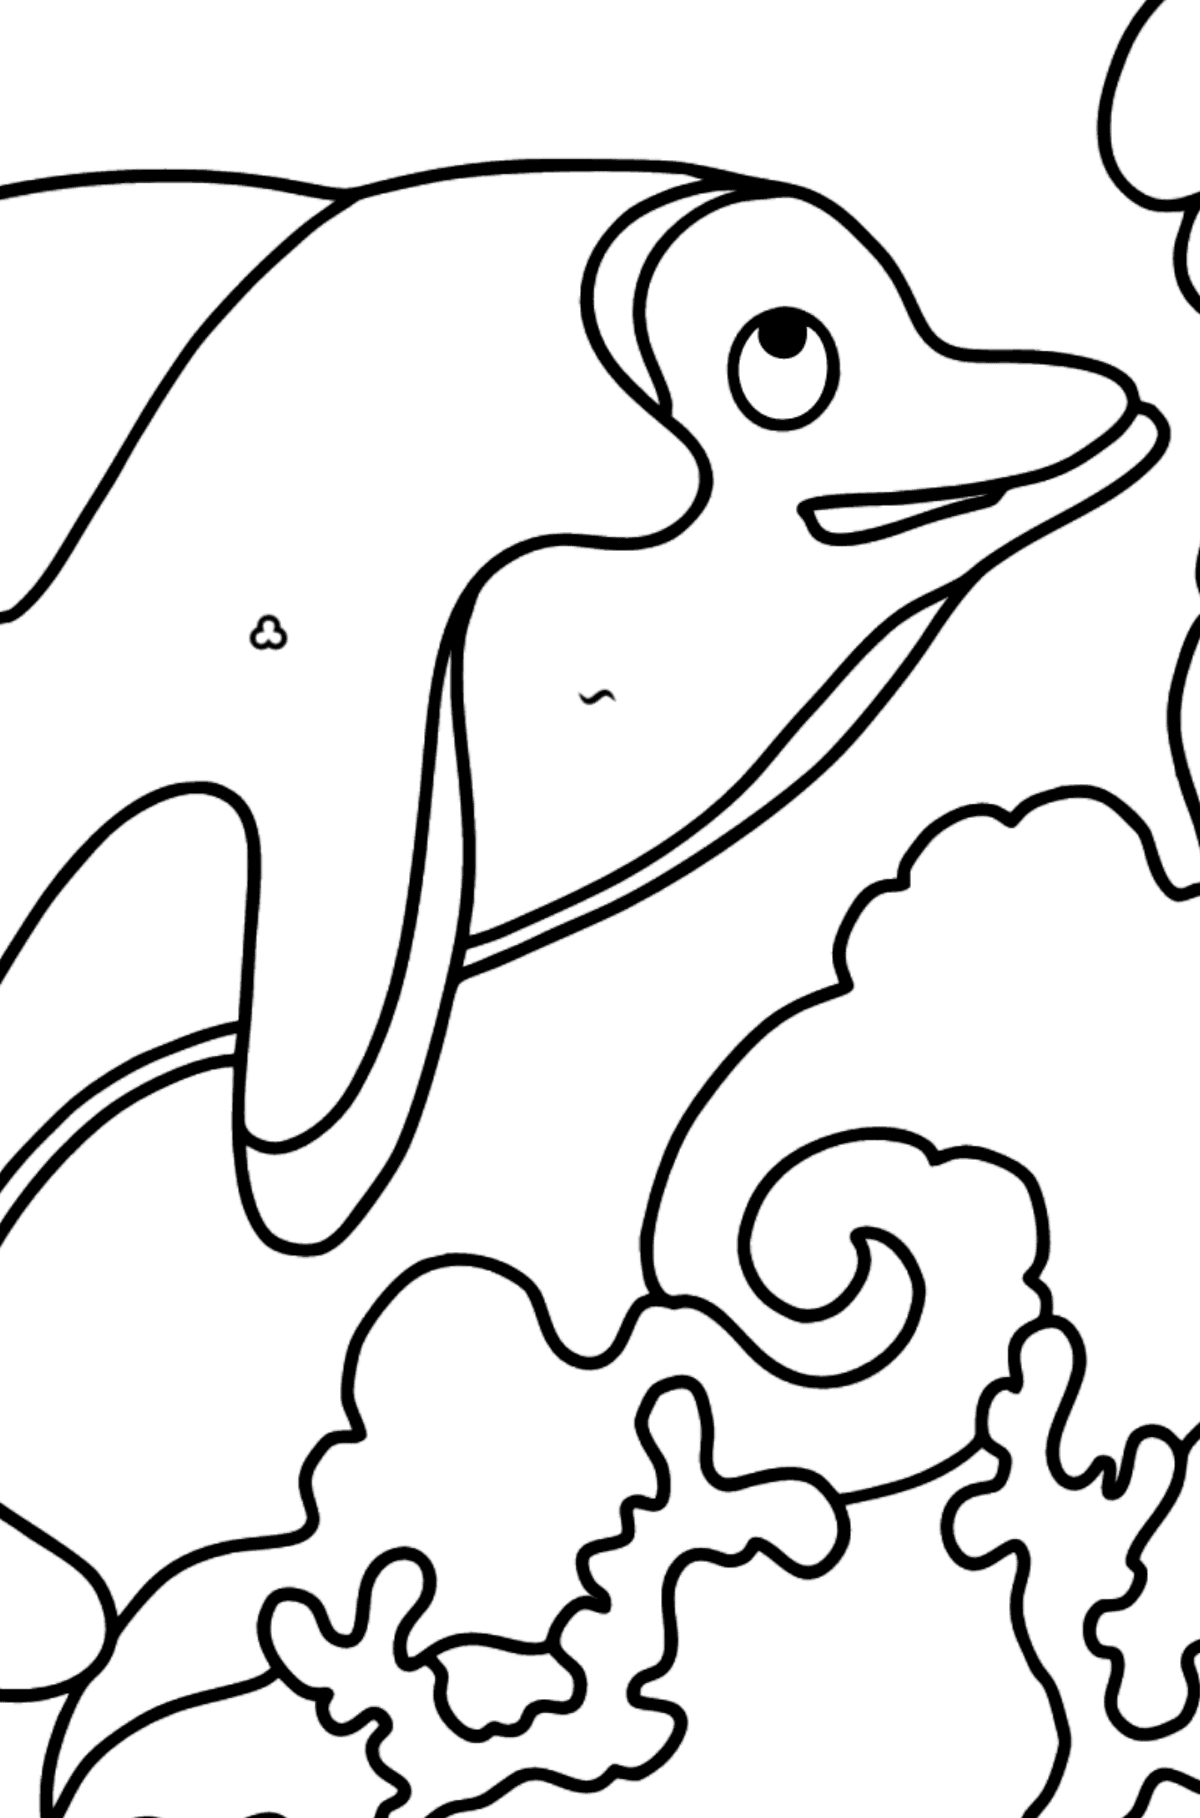 Розмальовка Дельфін для дітей - Розмальовка по Символам і Геометричним Фігурам для дітей